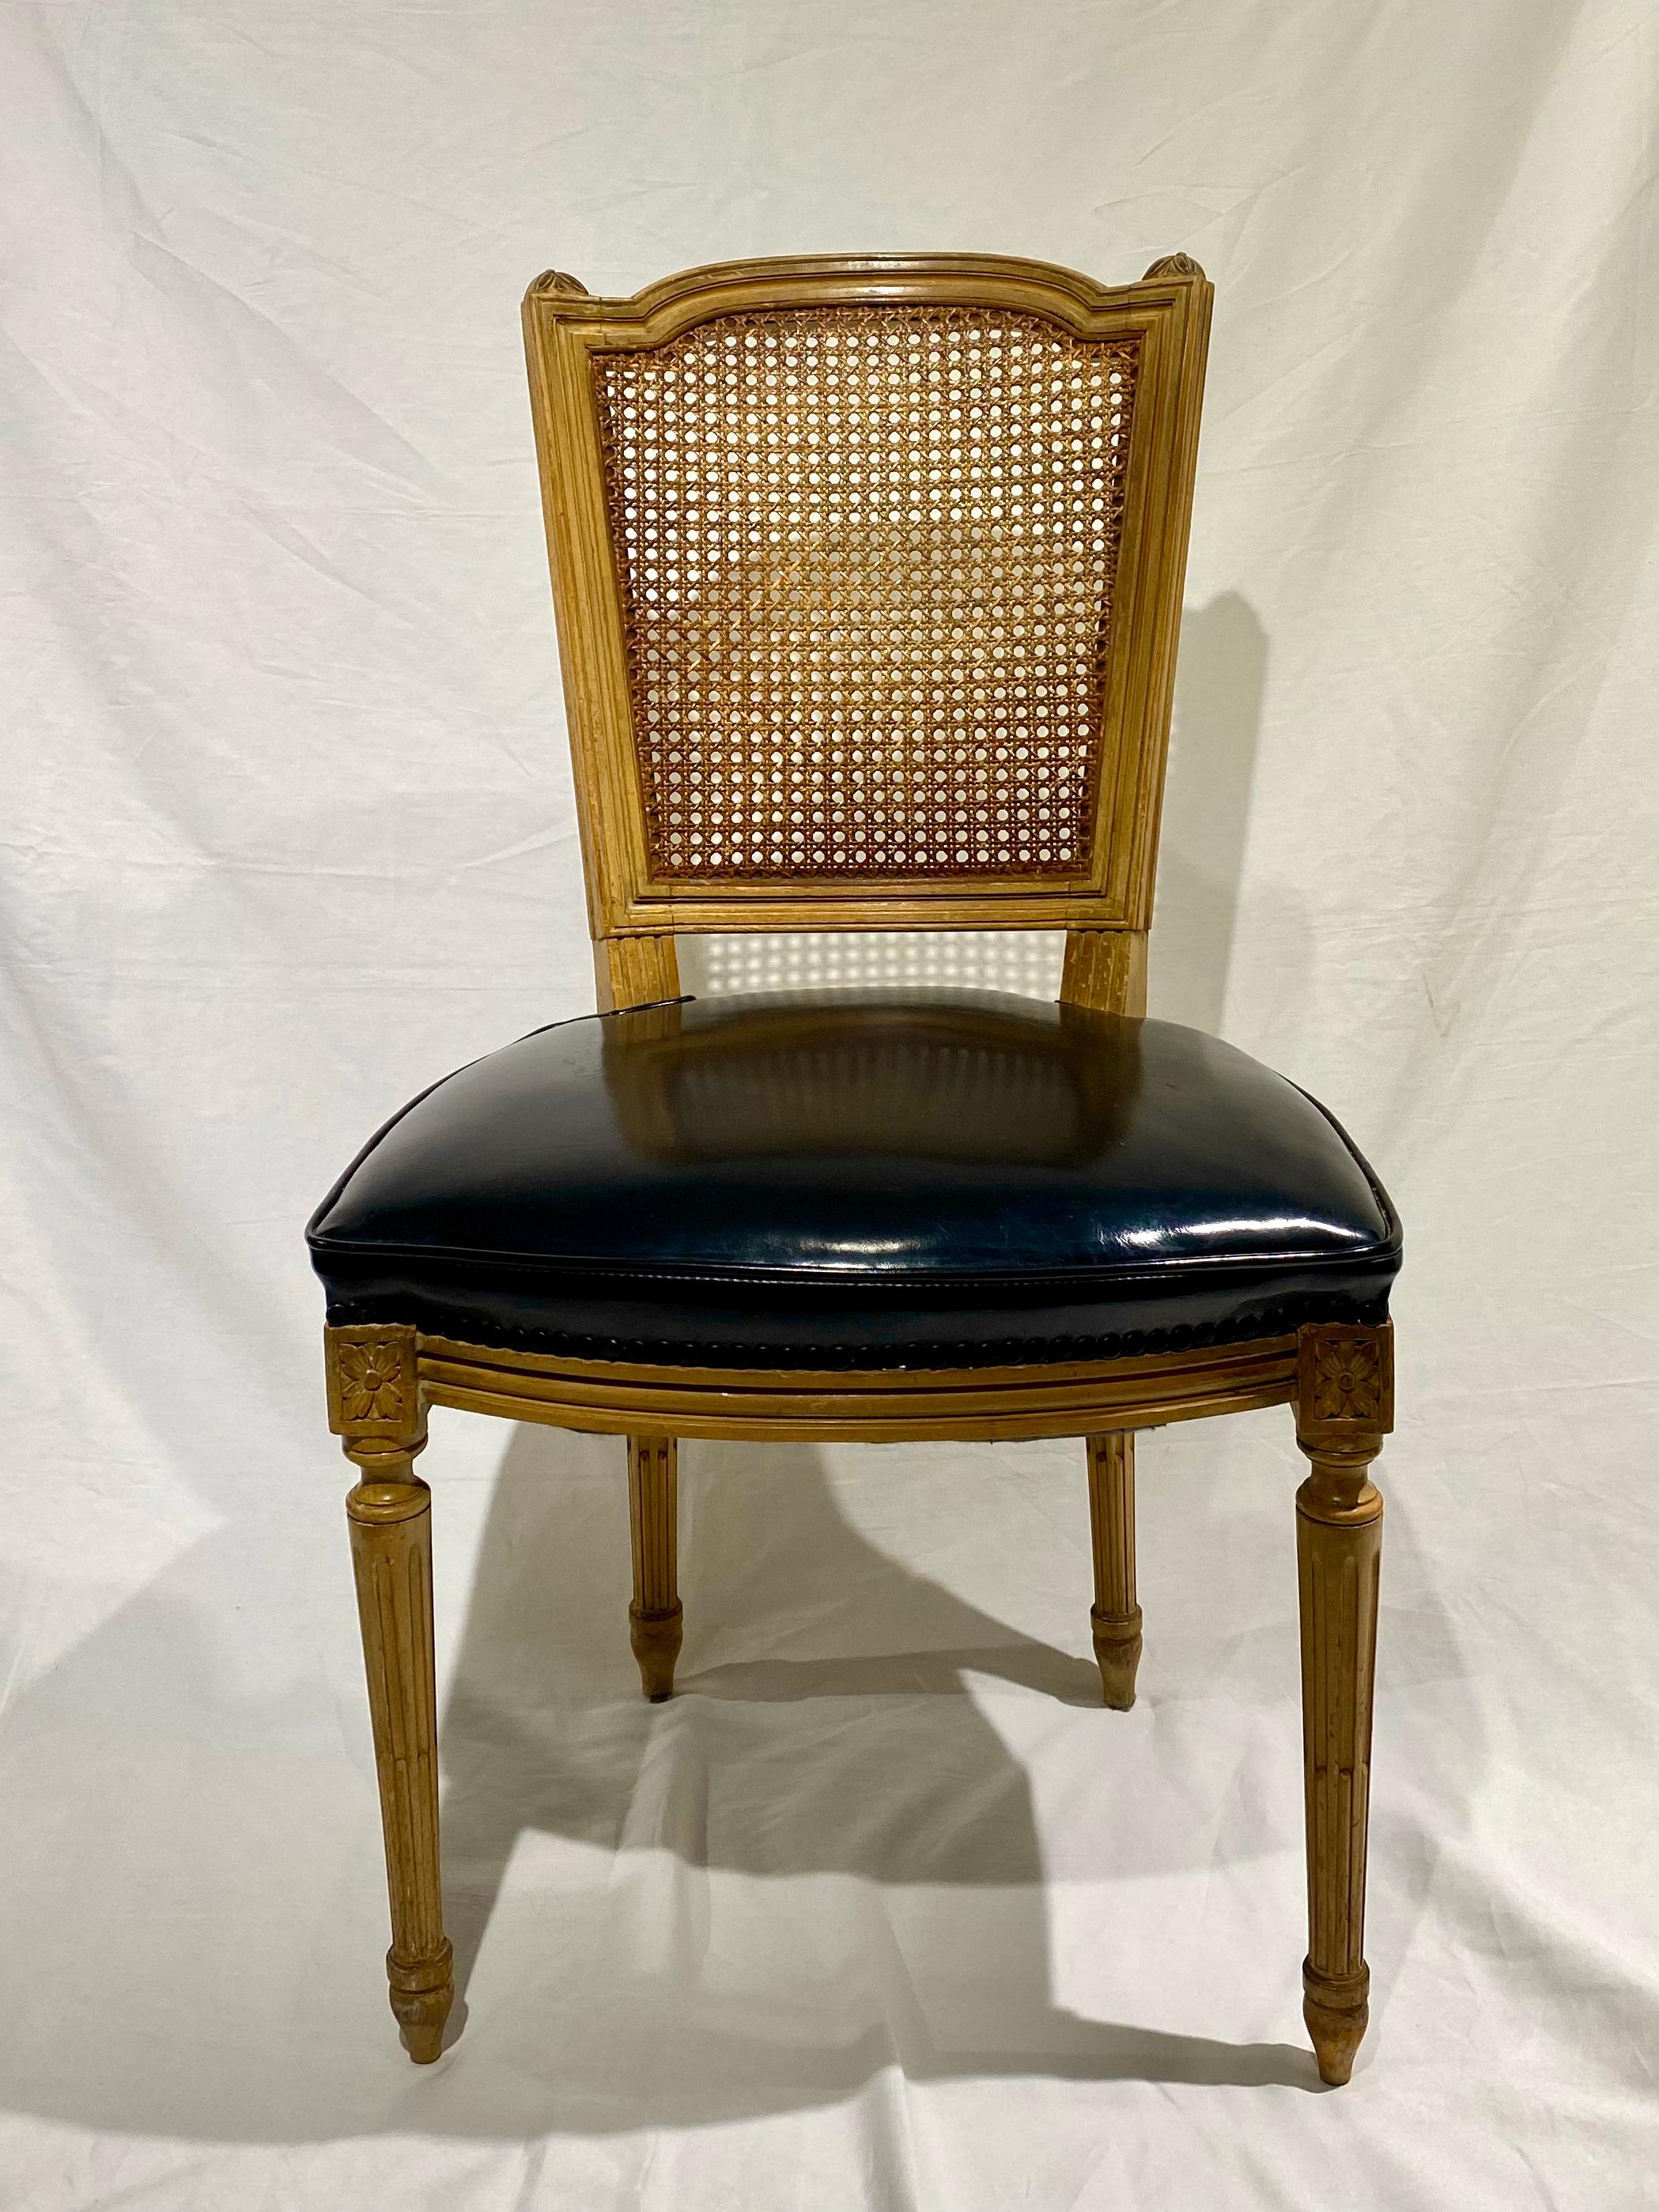 Ensemble de quatre chaises françaises estampillées Maison Jansen, à dossier en rotin patiné, de style classique Louis XVI, avec sièges en vernis noir. Modernité du milieu du siècle, style Hollywood Regency. Tampon Jansen.
  